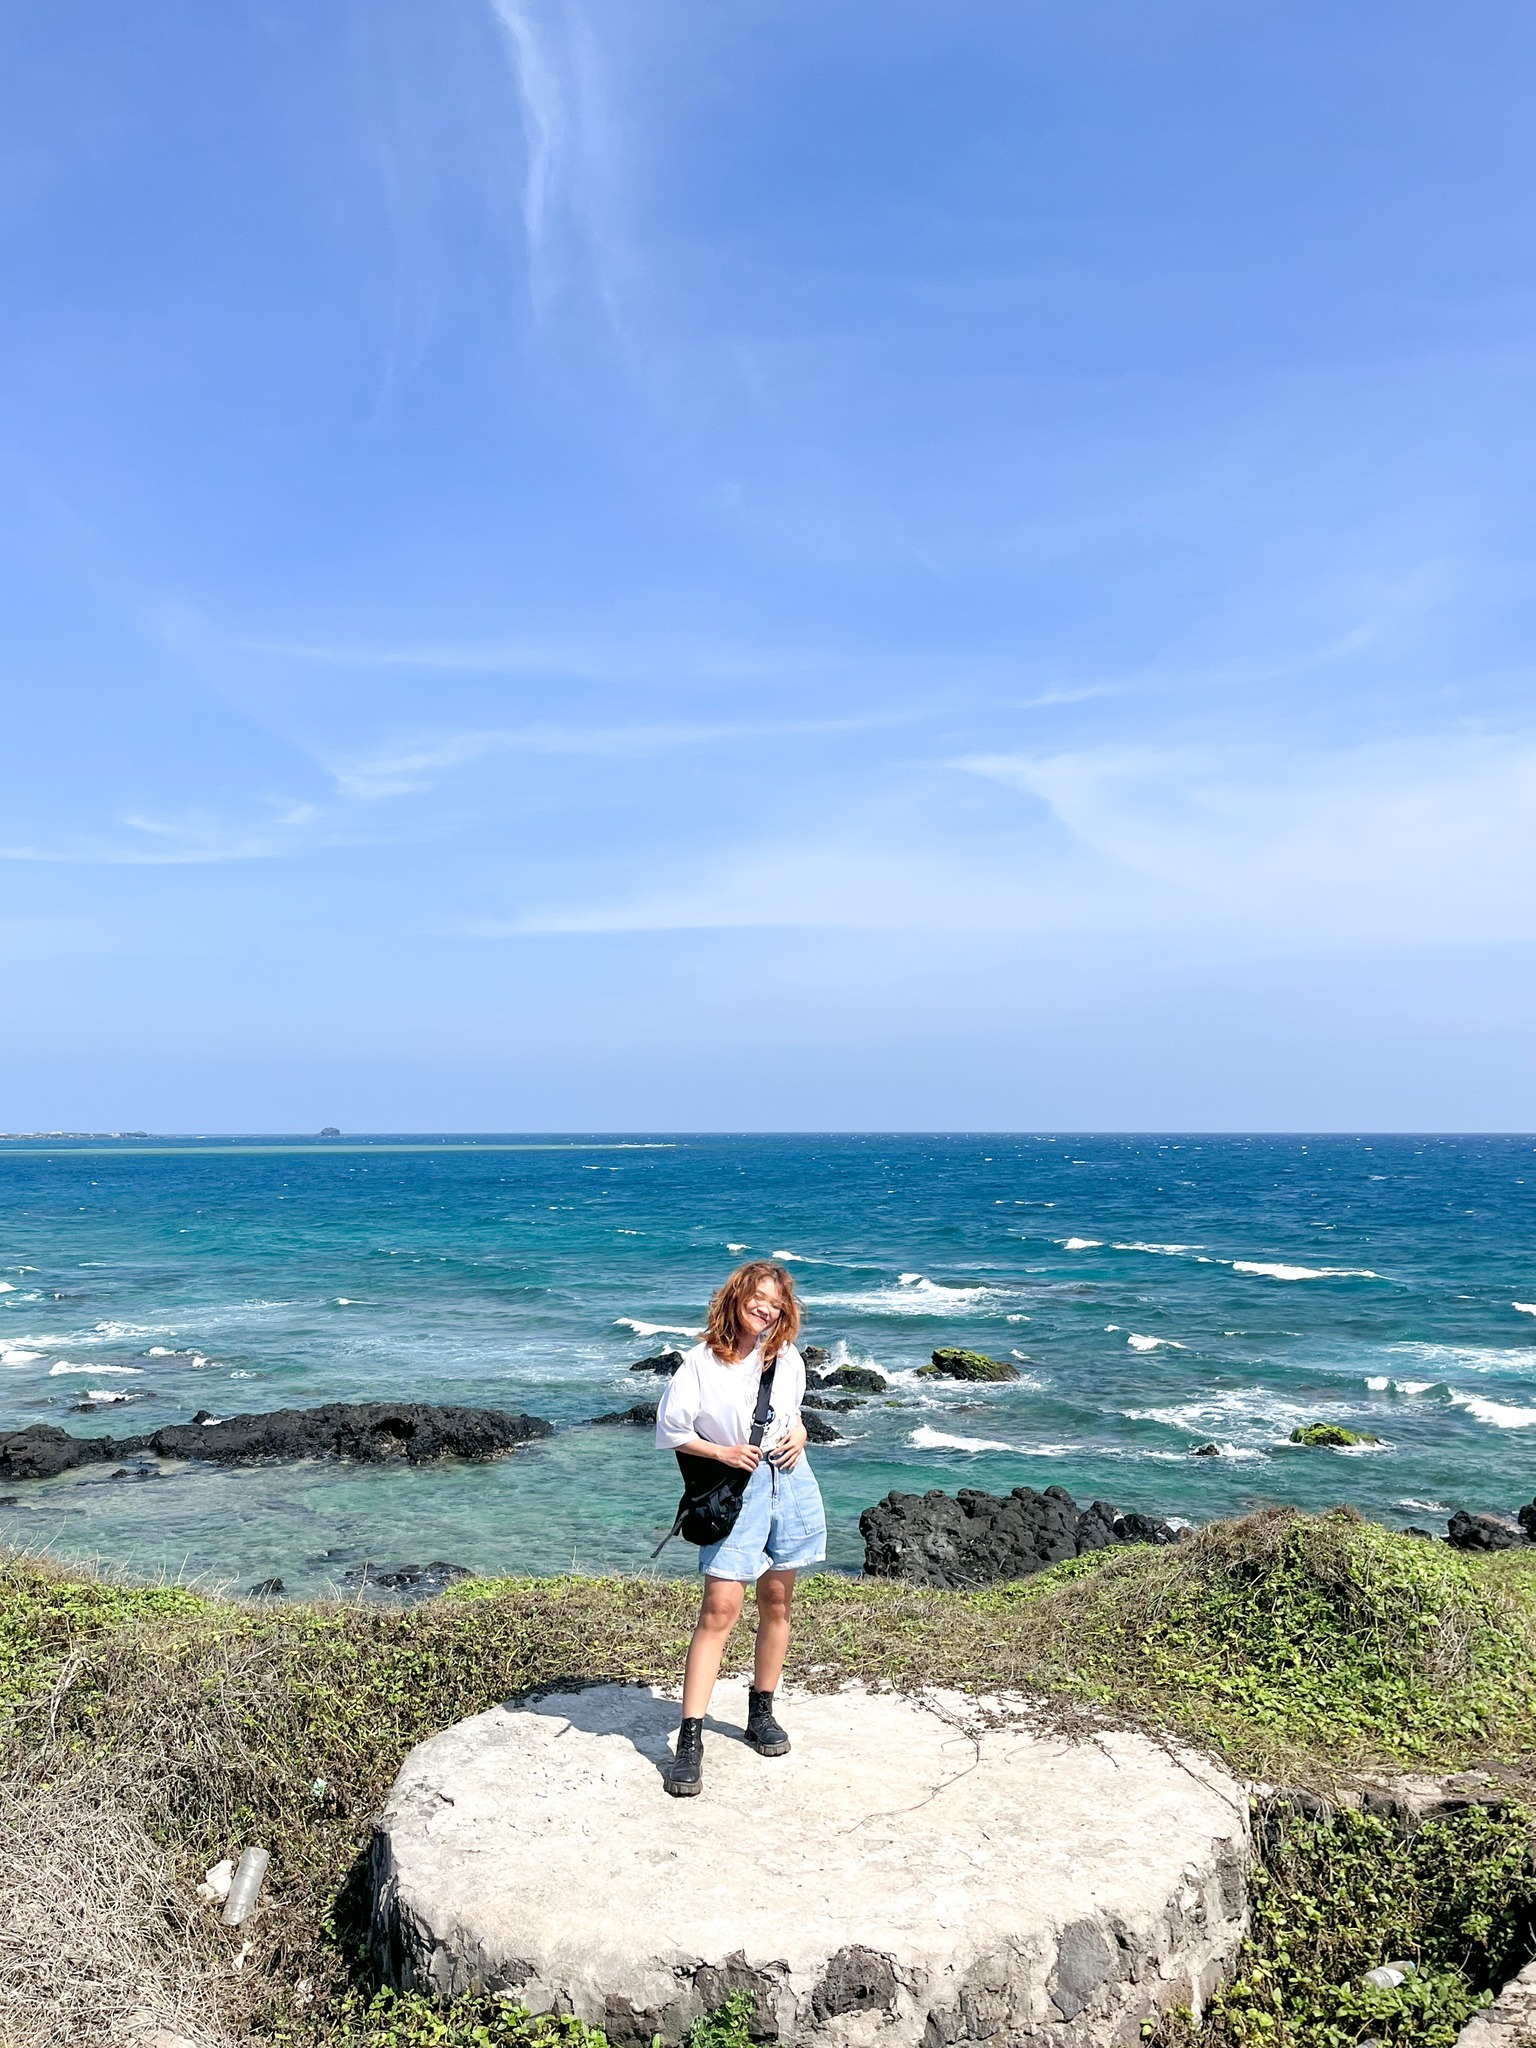 Trải nghiệm đáng nhớ ở hòn đảo xinh đẹp của Việt Nam - 7